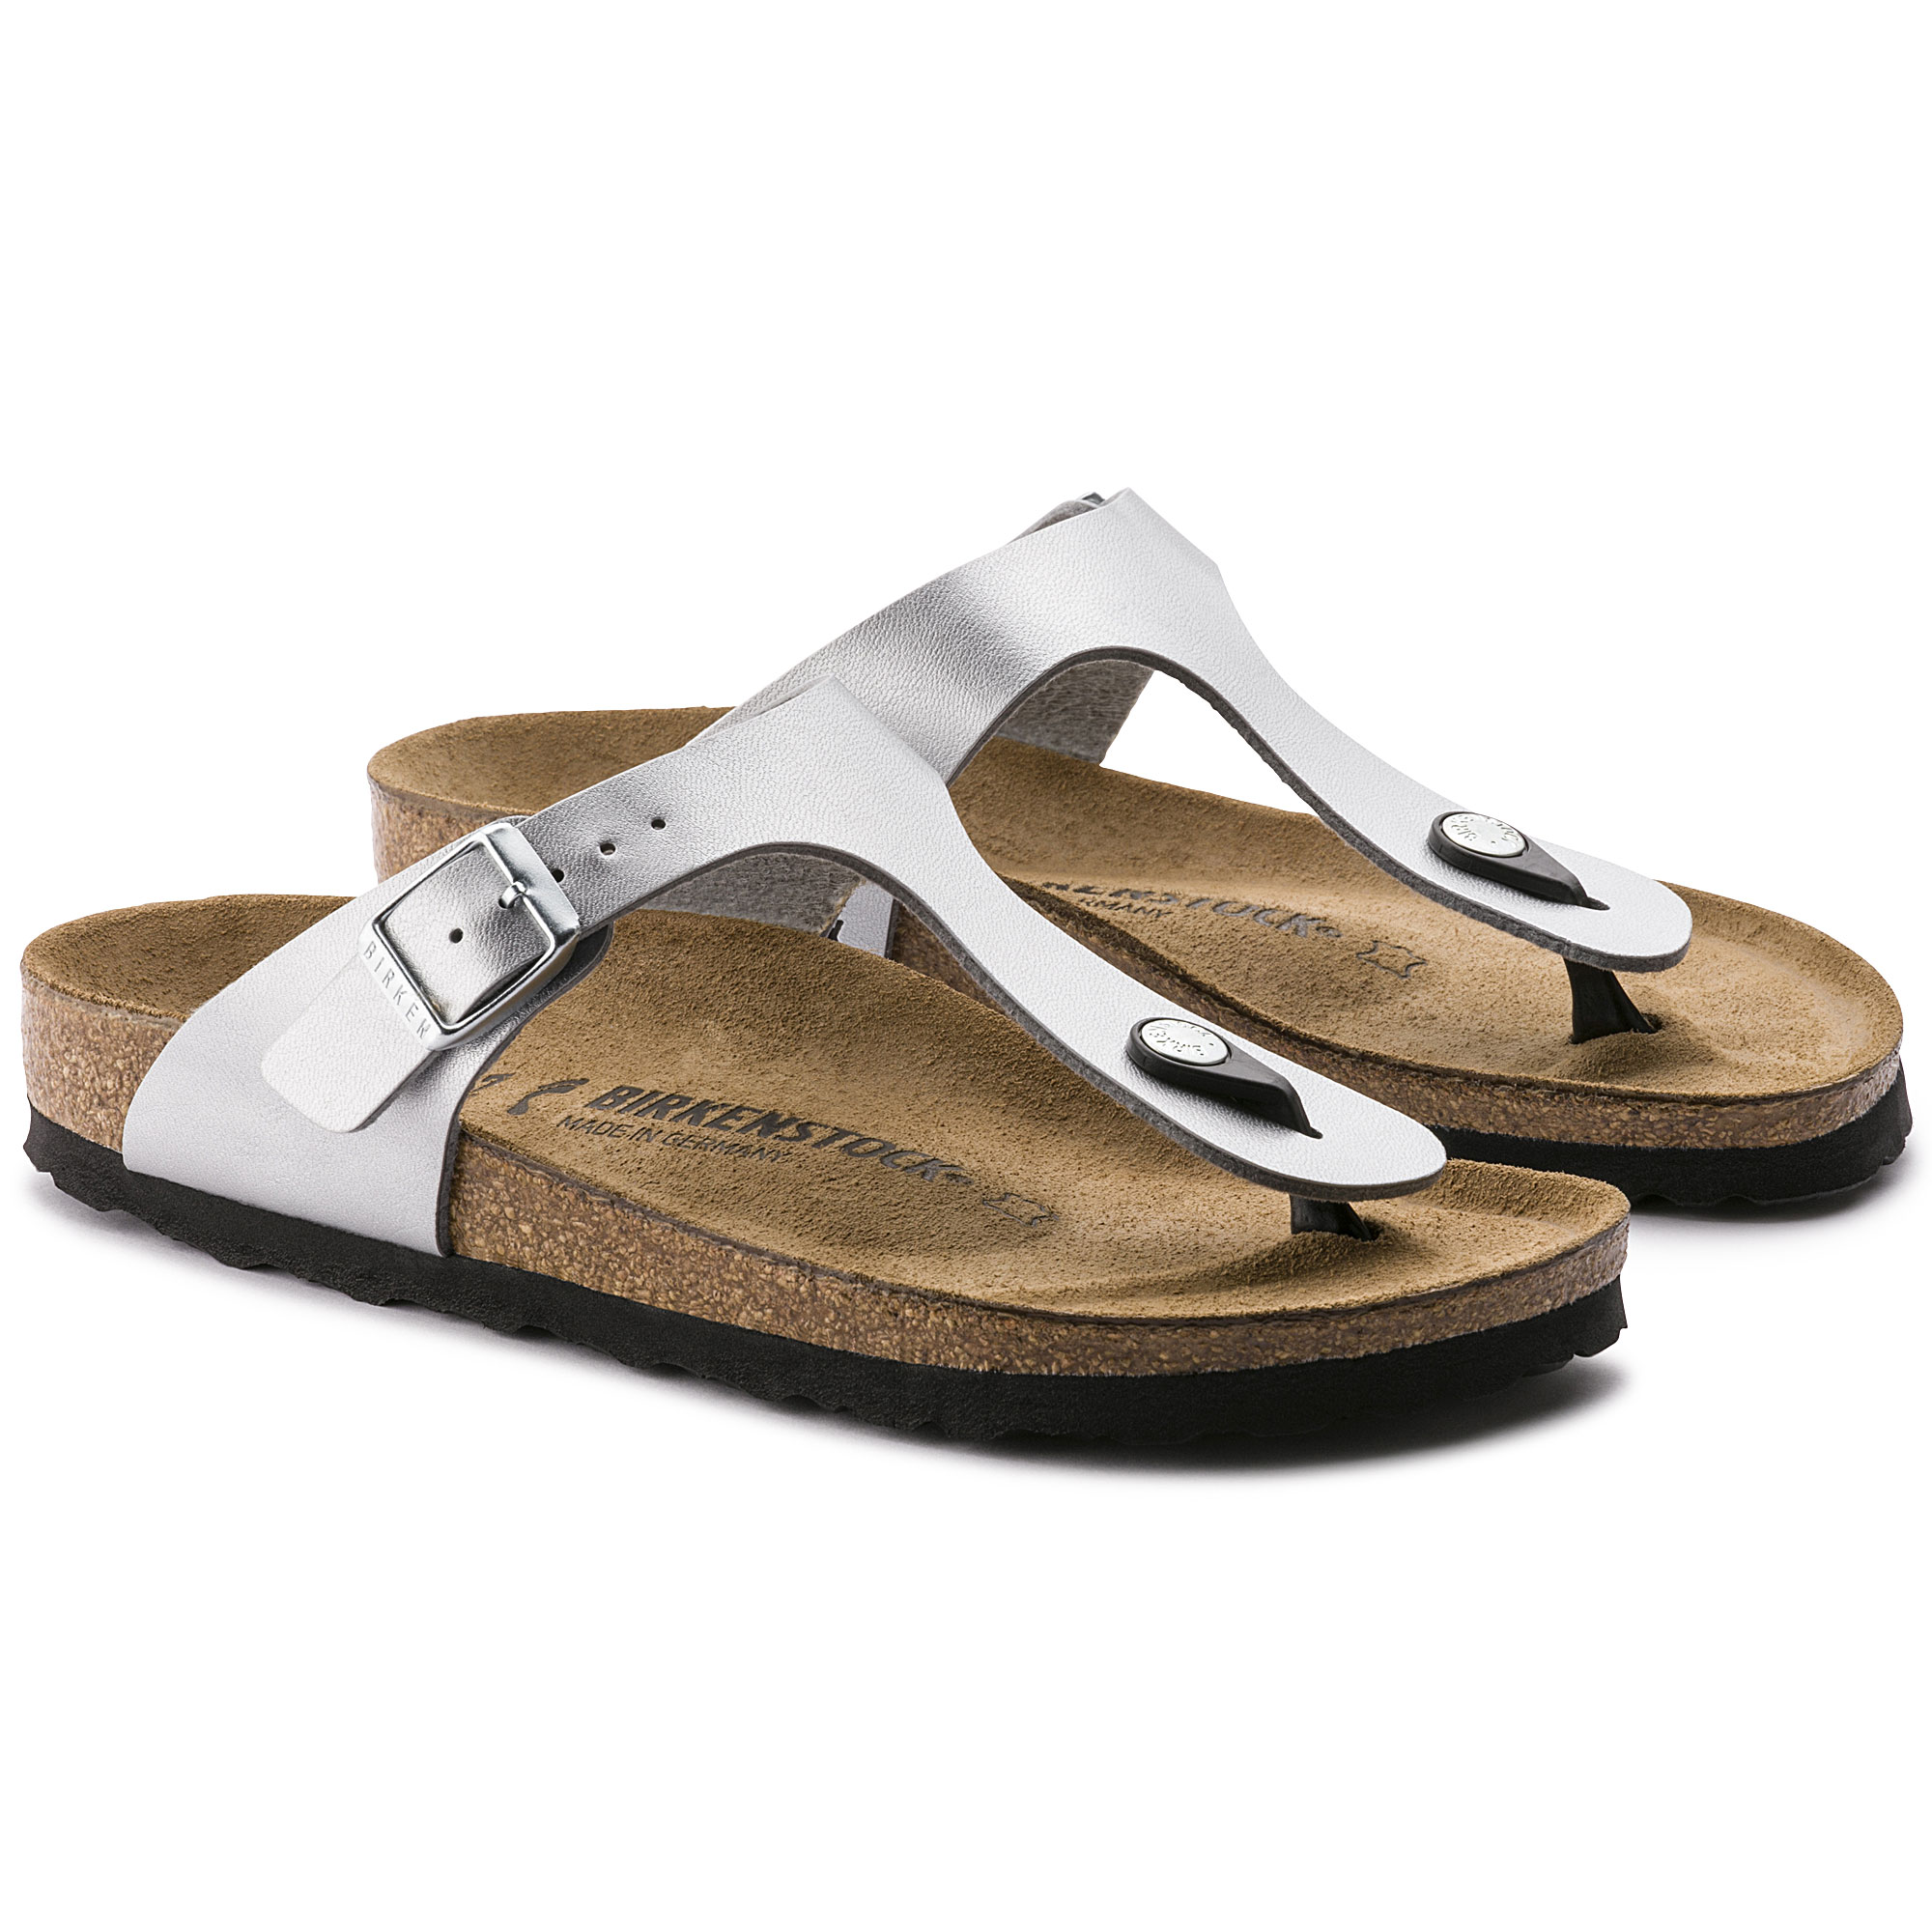 silver birkenstock sandals